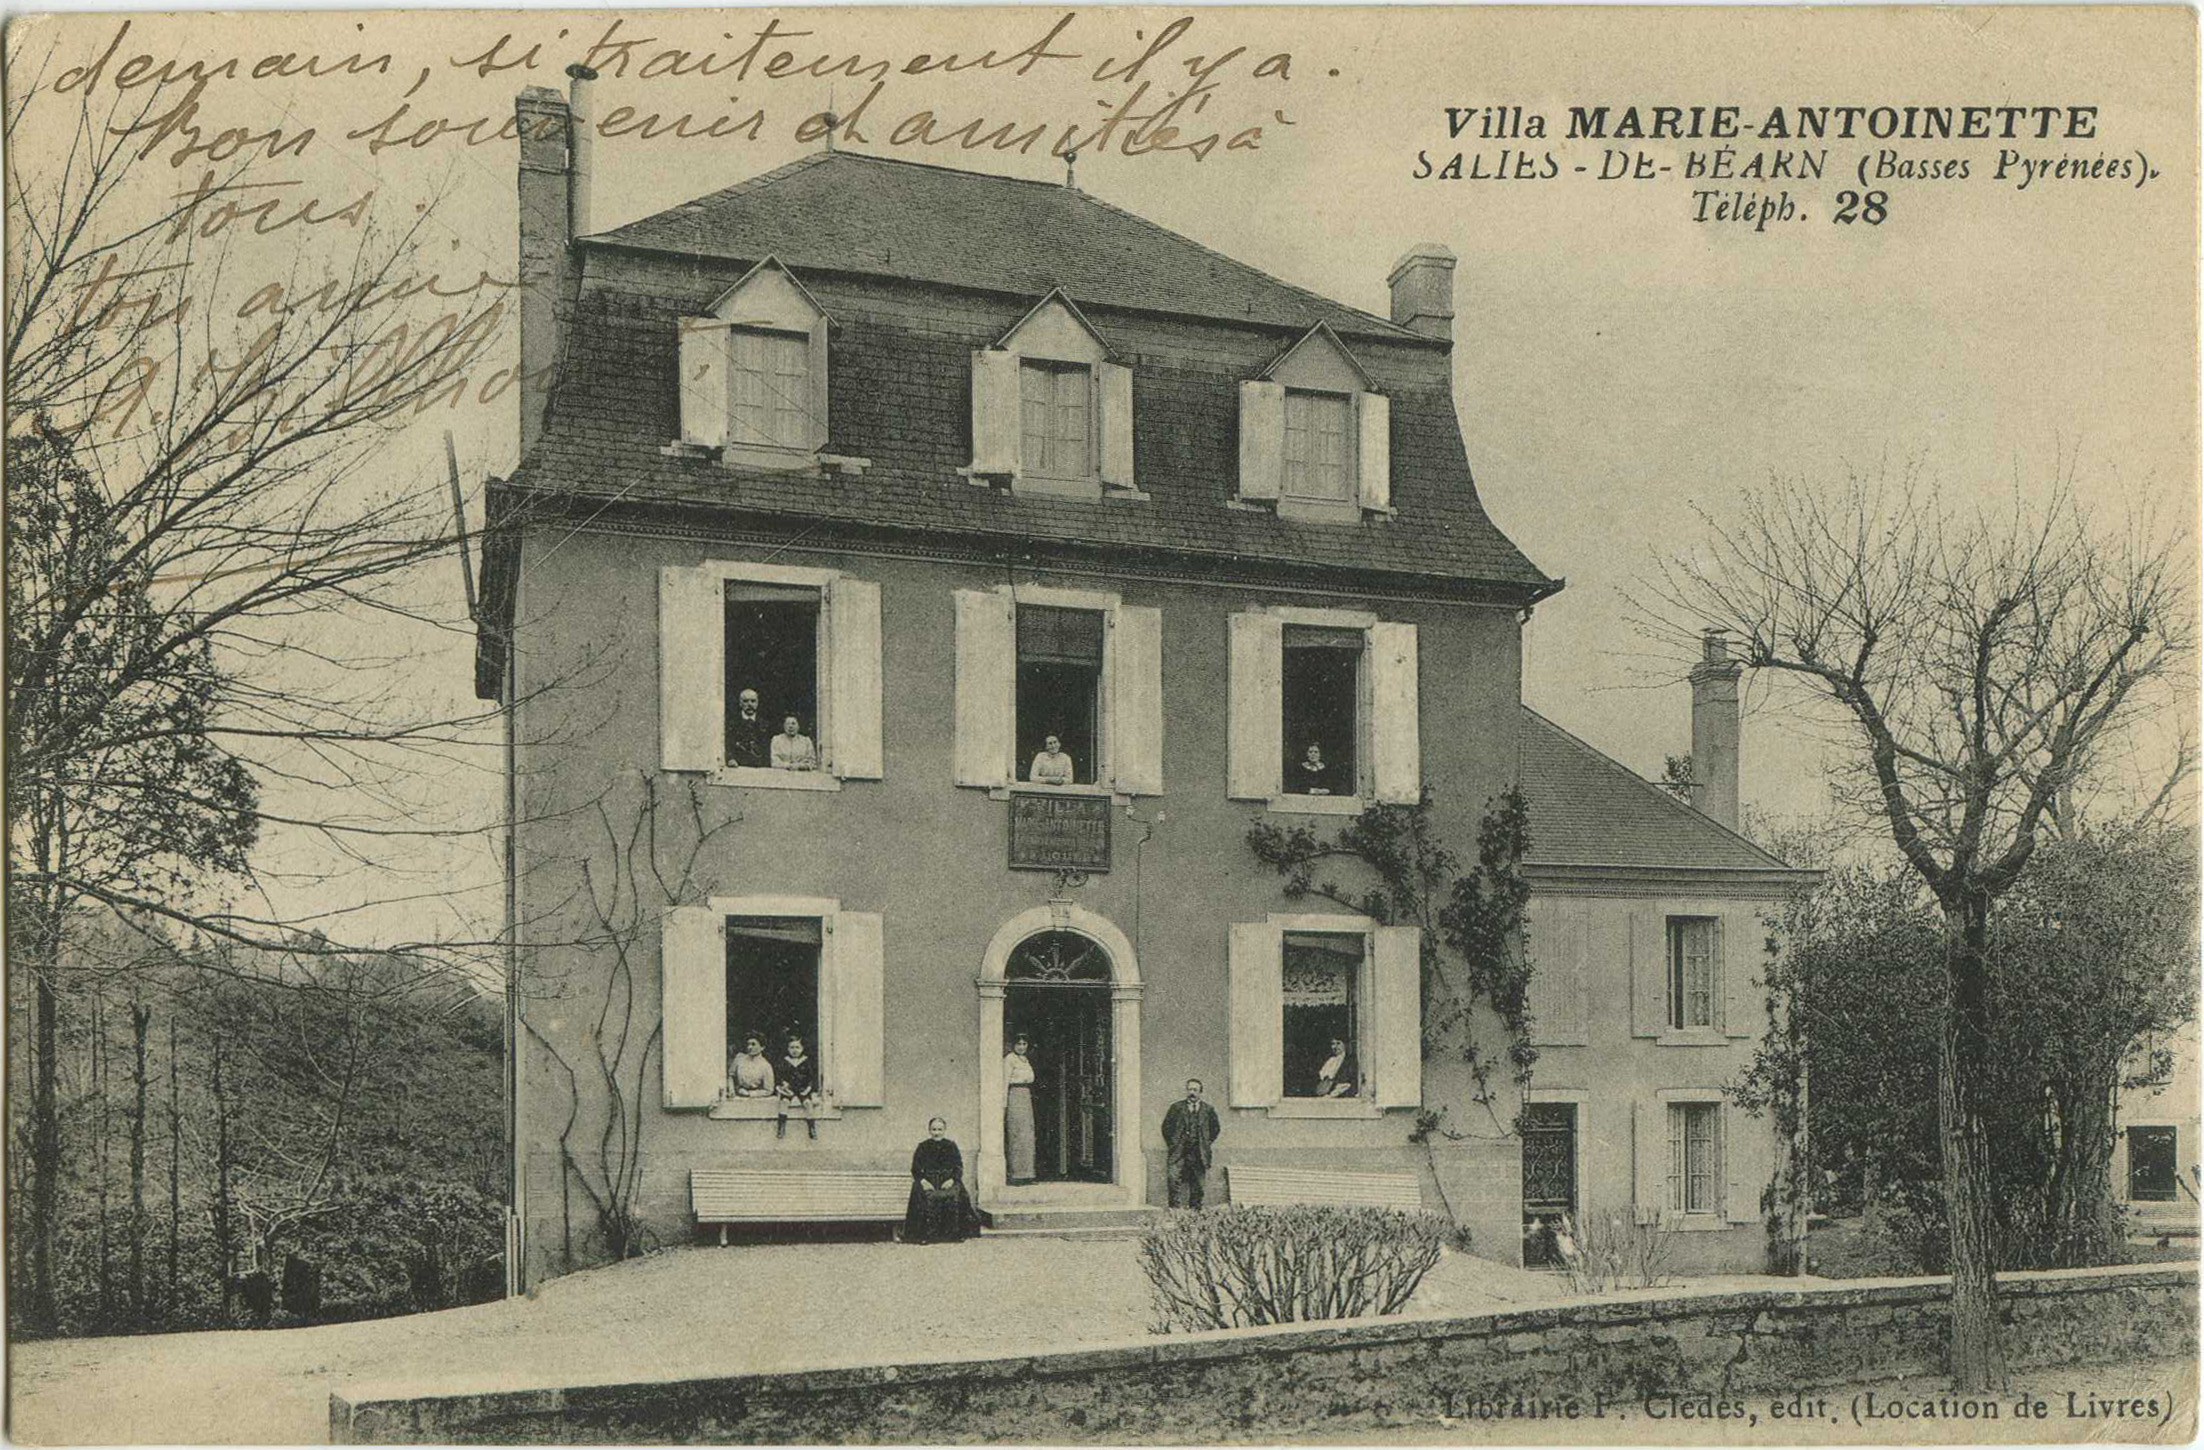 Salies-de-Béarn - Villa MARIE-ANTOINETTE - Téléph. 28